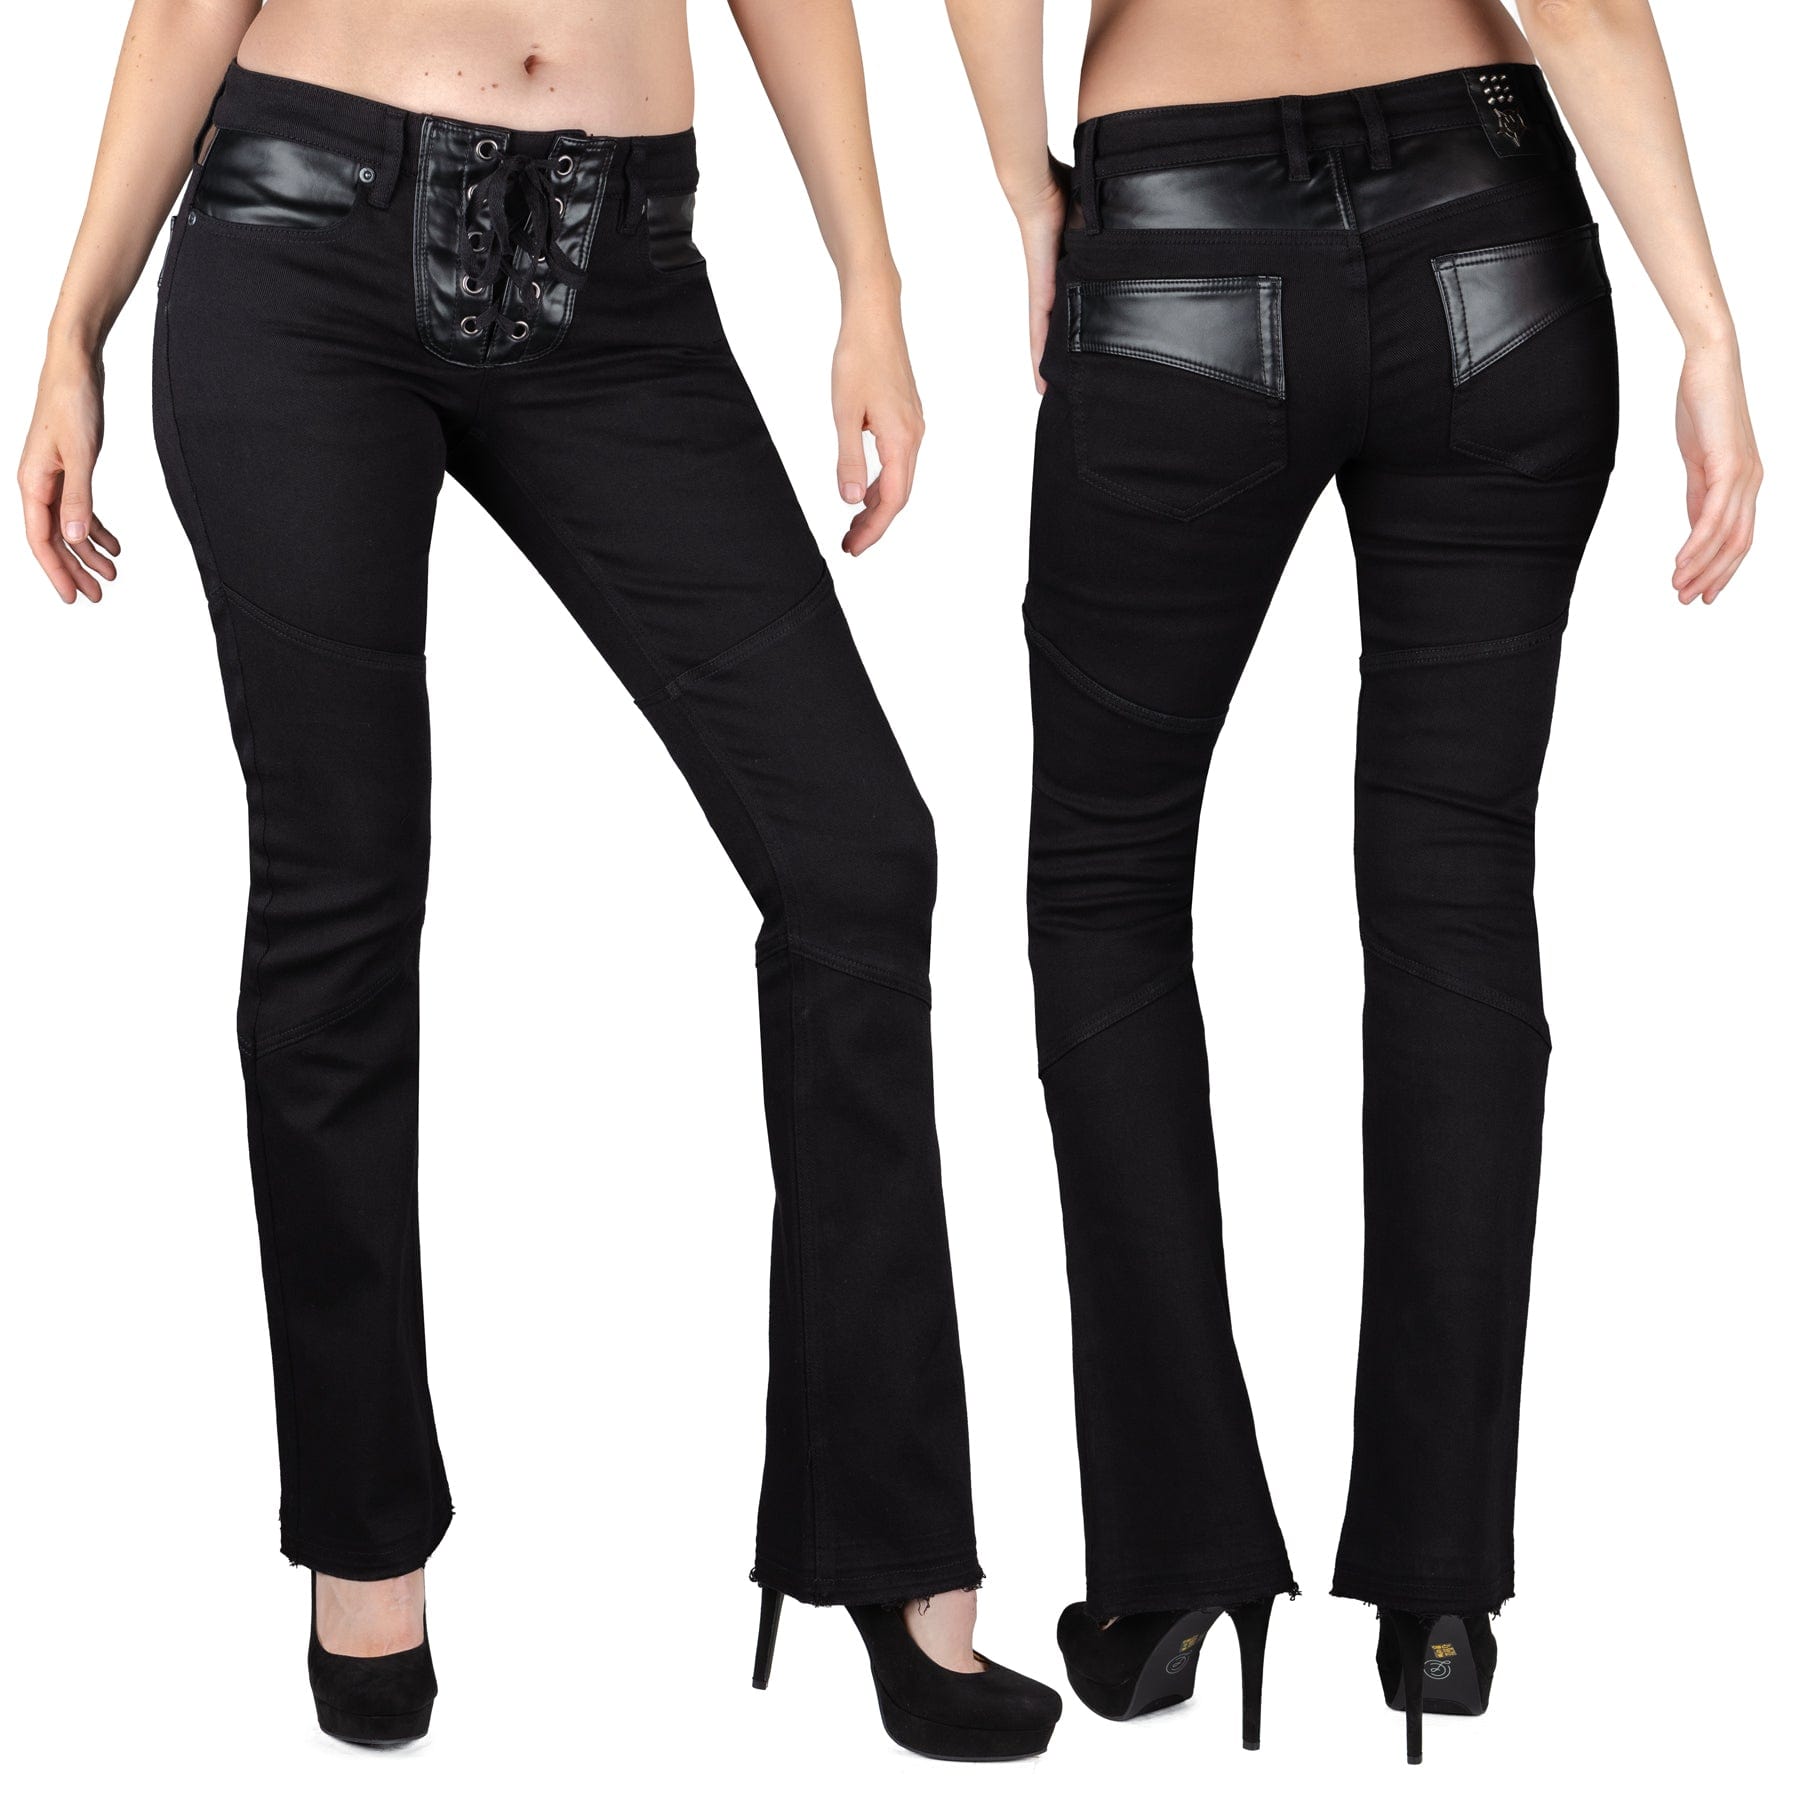 Wornstar Clothing Unisex Jeans. Troubadour Denim Jeans - Black